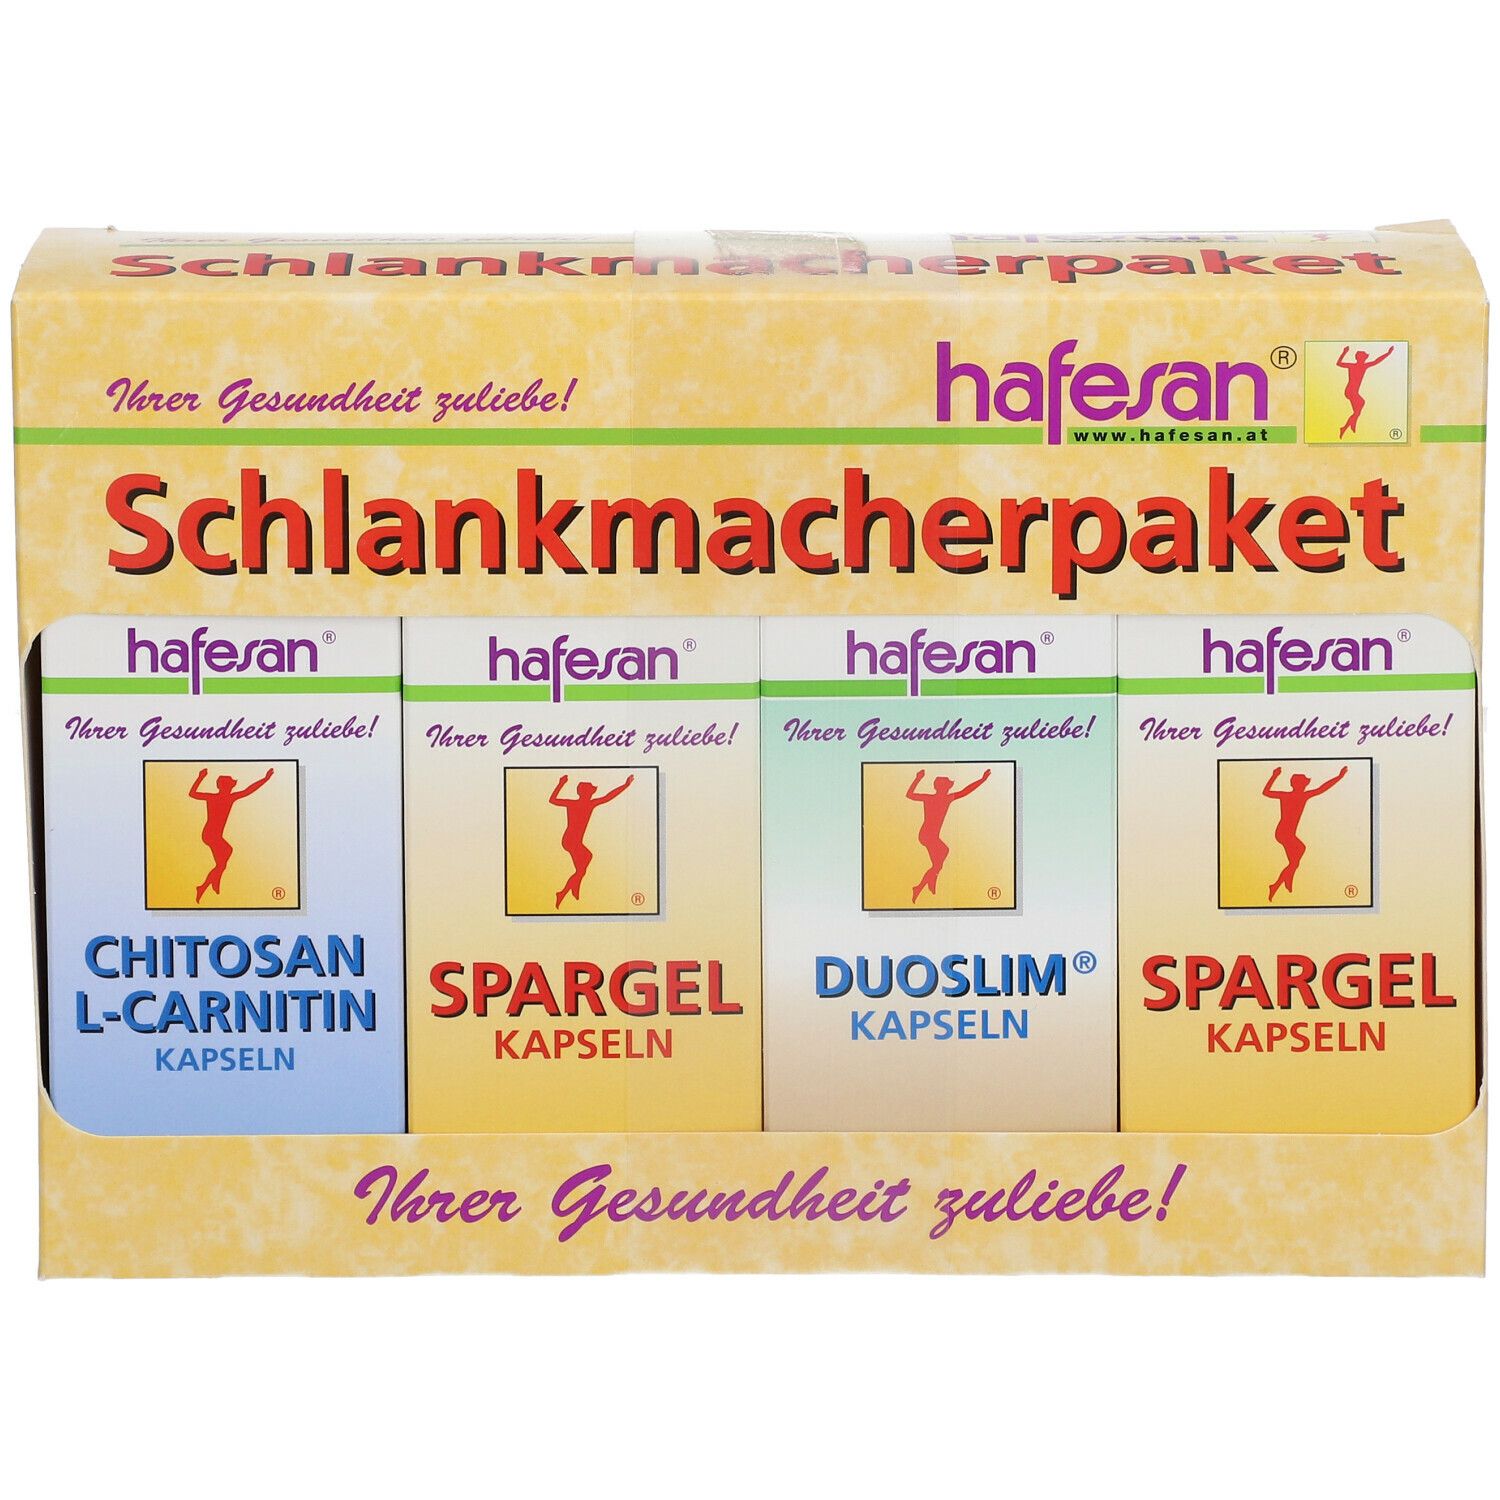 hafesan® Schlankmacherpaket